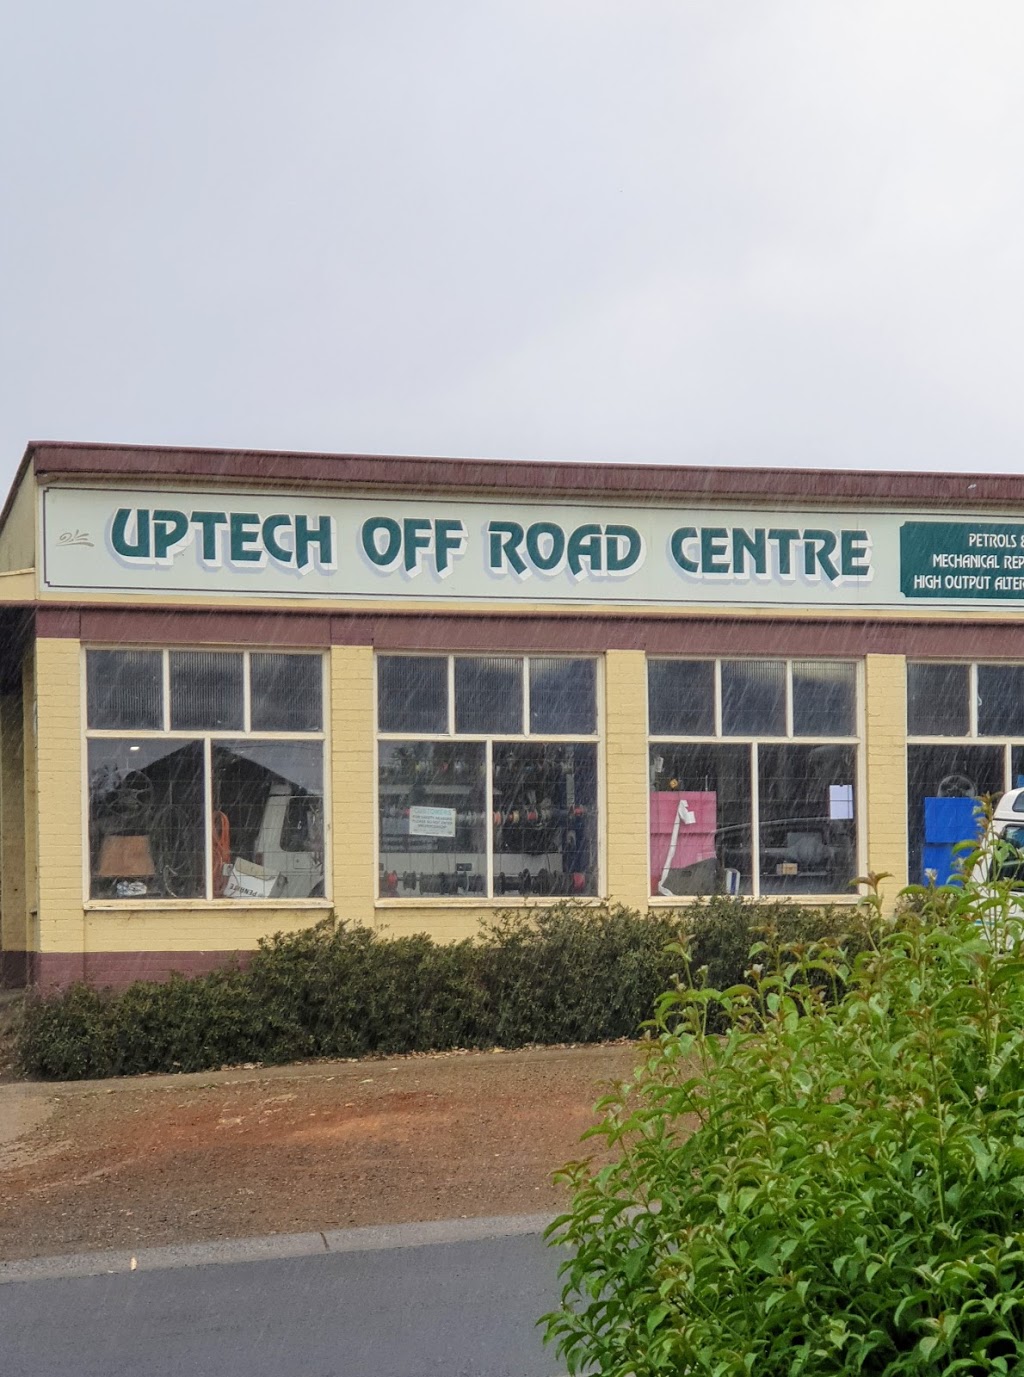 Uptech Off Road Centre | car repair | 2-8 Main Rd, Monbulk VIC 3793, Australia | 0397566523 OR +61 3 9756 6523